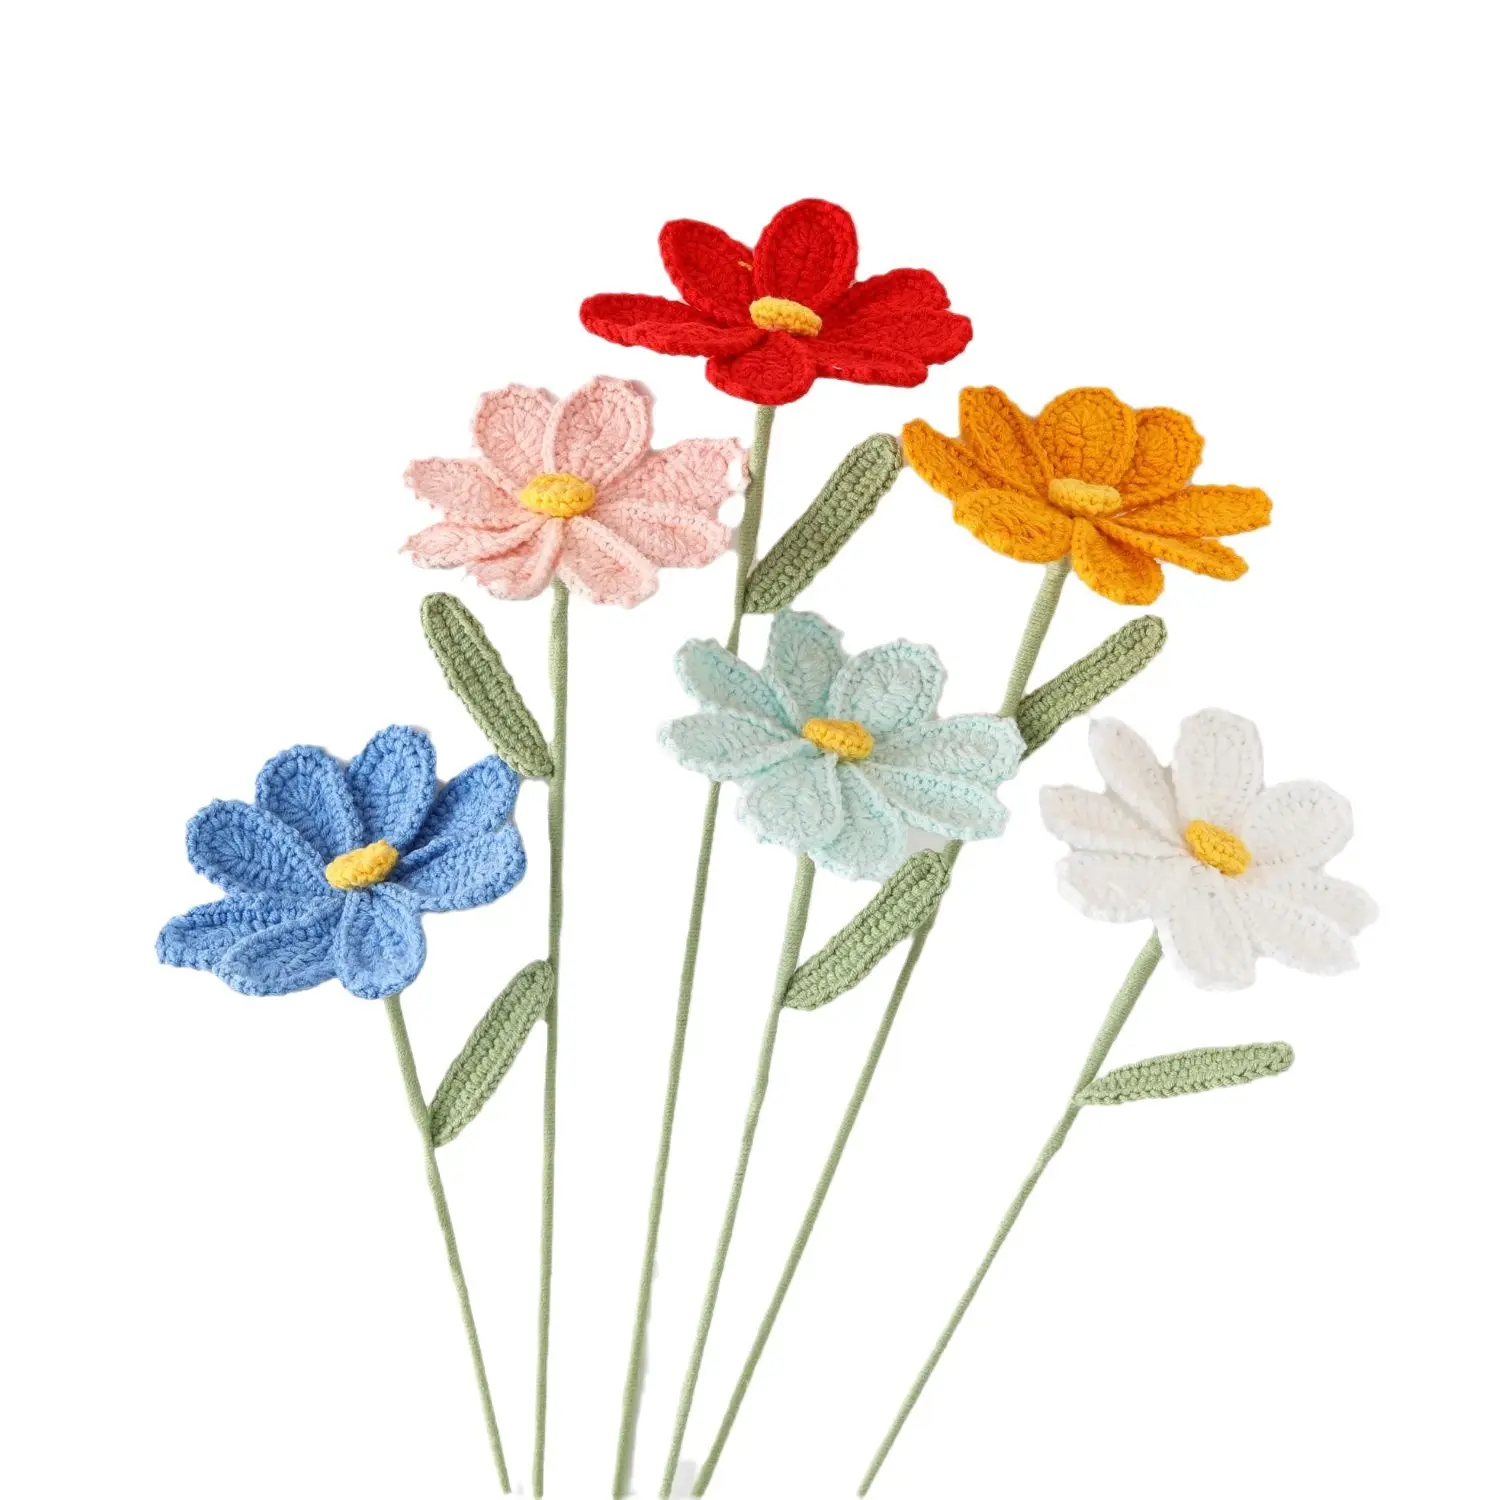 Flor Gesang Multicolor de punto hecho a mano para decoración del hogar hilo de algodón flores de ganchillo lavable para siempre flores decoración de boda